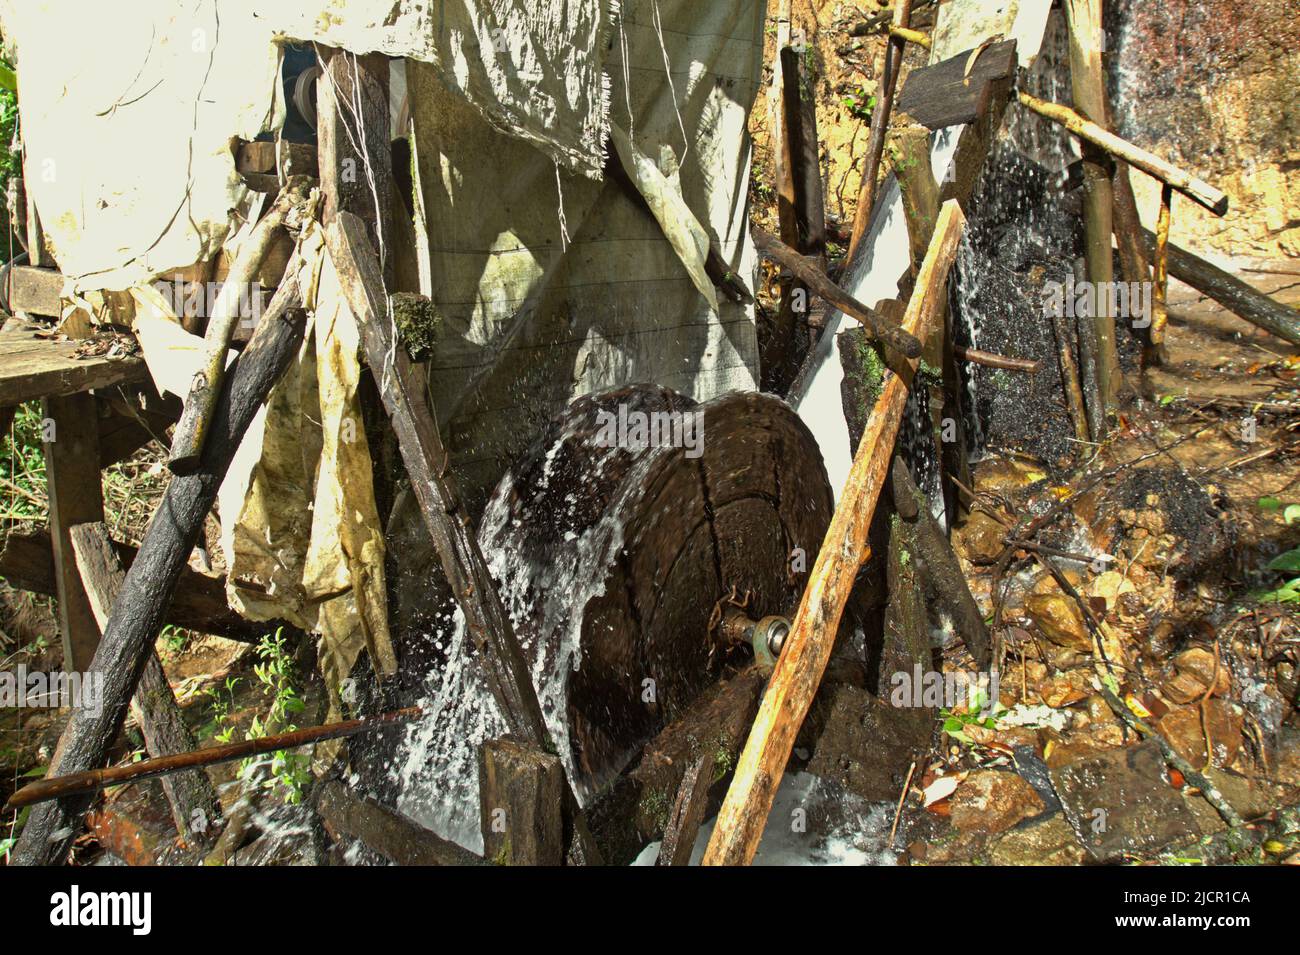 Une installation commune de micro hydro dans un ruisseau près du parc national Gunung Halimun Salak à Citalahab, Malasari, Nanggung, Bogor, West Java, Indonésie. Banque D'Images